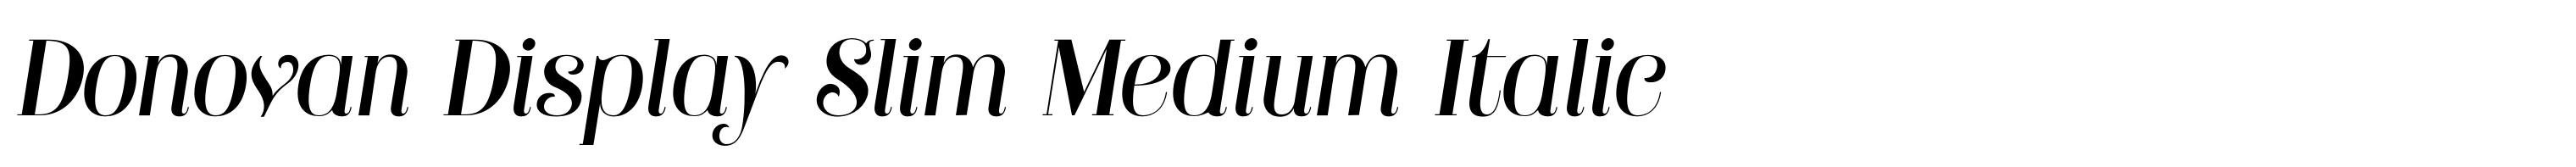 Donovan Display Slim Medium Italic